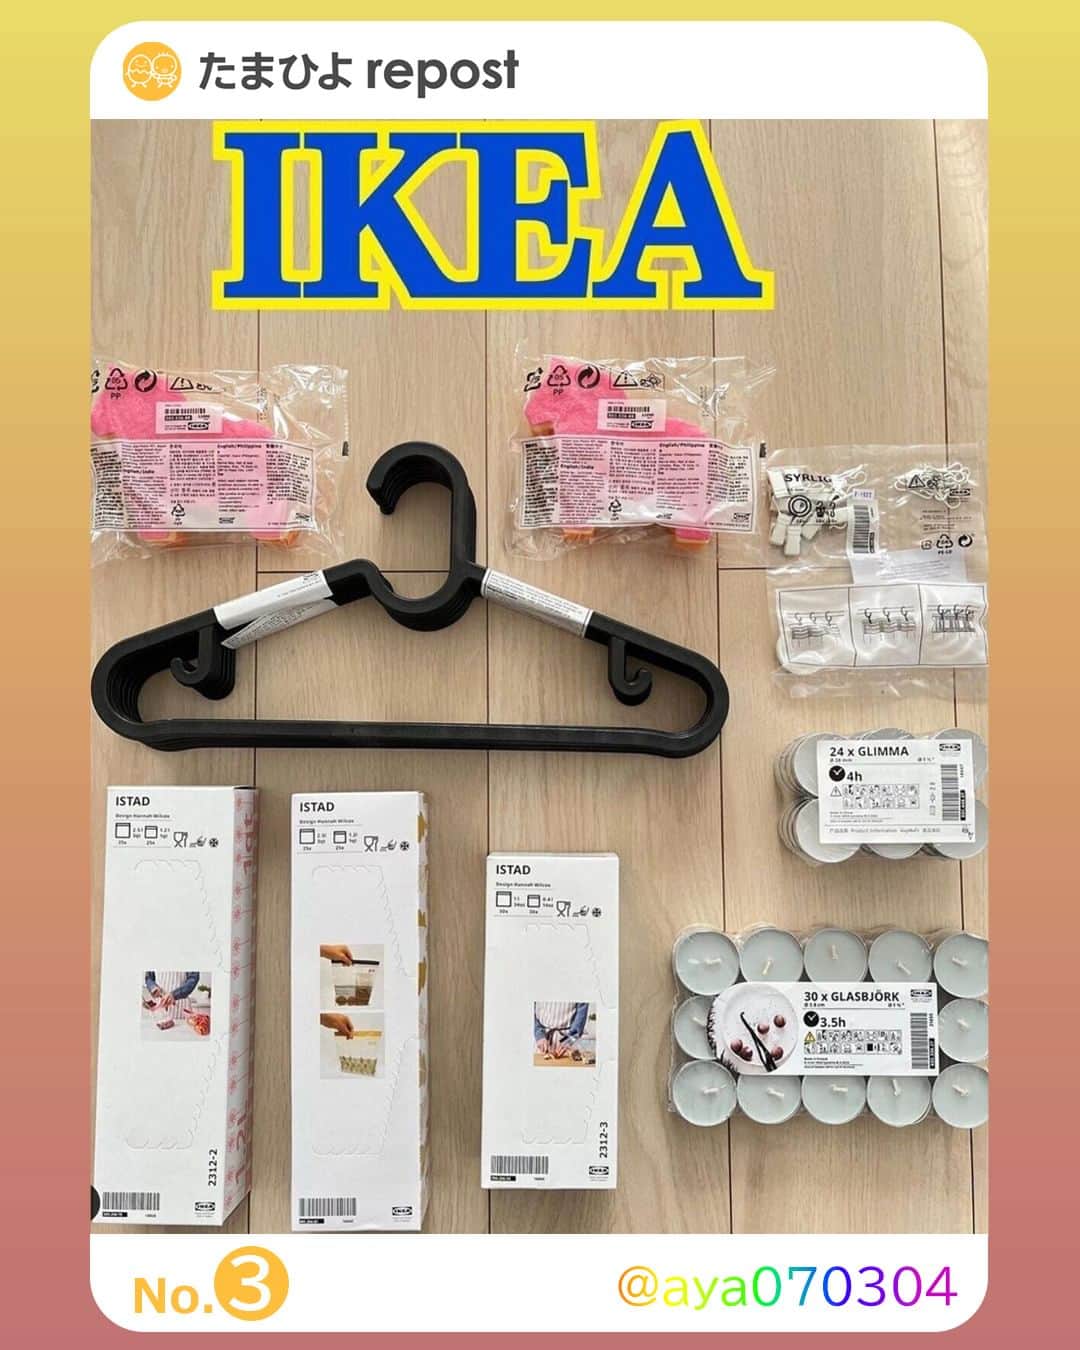 【公式】たまひよ編集部さんのインスタグラム写真 - (【公式】たまひよ編集部Instagram)「＼IKEAに行きたいっ❣と思ったらコメント欄の❤️でぜひ教えてね🐣／  ========== IKEA 「まさかの299円」 「これ以外使えない」 日常的に使える便利なアイテム5選 ==========  SNSではIKEA購入品の投稿が大人気！ 今回はさまざまな人気アイテムの中から、日常的に使える便利なIKEAアイテムをご紹介いたします！ 収納グッズやキッチン用品など、さまざまなお気に入り小物を見つけてみてくださいね♪  ＜No.1＞ @_rsrshome2021 さん ●299円の「#GÖRSNYGG（#ヨールスニグ）」は水や汚れに強い！ _rsrshome2021さんはIKEAの「GÖRSNYGG（ヨールスニグ）」をセレクト。価格は299円だそうで、水や汚れに強く使い勝手が良いんだとか。シンプルなデザインもお気に入りポイントとのこと！  ＜No.2＞ @sao_room_ さん ●もうこれ以外使えない！IKEAのバスマット「#TOFTBO（#トフトボー）」 グレージュ系のインテリアが好みというsao_room_さん。洗面所ではIKEAのバスマット「TOFTBO（トフトボー）」を愛用しているそうで、「肌ざわりと吸水性が良くかなりの高機能。もうこれ以外使えない。」とのこと。  ＜No.3＞ @aya070304 さん ●スポンジ、ハンガー、キャンドル…ついつい買っちゃうIKEA小物 こちらはaya070304さんのIKEAまとめ買い品。「つい買ってしまう」というスポンジや、冬に大活躍のアロマキャンドル、「軽くてかさばらなくて使いやすい」というハンガーなど、さまざまなIKEA小物をまとめ買いしたとのこと♪  ＜No.4＞ @mido._.home さん ●「#SKUBB（#スクッブ）」シリーズ3種を愛用中！ 年に一度のペースでIKEAに行くというmido._.homeさんは、自宅で「SKUBB（スクッブ）」シリーズを愛用中！布団や毛布、ラグやクッションを収納するのに使っているそうで、さまざまな大きさが展開されているのも嬉しいですよね。価格はそれぞれ899円、1,499円、1,799円だったようです。  ＜No.5＞ @__r.ism さん ●2,499円のサービングスタンド「#SKOGSTA（#スコグスタ）」でおしゃれインテリア♪ __r.ismさんはIKEAのサービングスタンド「SKOGSTA（スコグスタ）」をセレクト！価格は2,499円だそうで、インテリアに高さを出したい時にも使える優れものとのこと♪ 置くだけでインテリアのおしゃれ度がグッとアップしそうなアイテムですよね！  どのIKEAグッズもデザイン性が高く、さらに実用的なのも嬉しいですよね！ プチプラで買えるものも多く、ついついたくさん買いたくなっちゃいそうです♪ ぜひみなさんもお気に入りのIKEAグッズを見つけてくださいね。 (文・浜本)  ●記事内容でご紹介している投稿、リンク先は、削除される場合があります。あらかじめご了承ください。 ●記事の内容は2023年10月の情報で、現在と異なる場合があります。 ●記事内の価格はすべて税込み、2023年10月時点のものです。  ------------------------ ＼写真や動画を募集中！／ ①「#たまひよ」のハッシュタグ＆②「@tamahiyoinsta」のメンションをつけて投稿していただくと、あなたの投稿が紹介されるかも！ 妊娠中や子育ての素敵な時間や残しておきたい瞬間を、ぜひたくさん投稿してくださいね♪  ＼ #公式たまひよグラマー 募集中！／ 編集部と一緒に、Instagramで活躍してくださる公式たまひよグラマー（たまひよgrammer ）を募集します。  妊娠・出産・育児についてのあれこれを発信していただくほか、商品モニター やイベントへの参加の機会も！  好奇心旺盛でインスタへの投稿を頻繁にしている方、大歓迎です！  ※応募は、プロフィール画面のURLをチェック → @tamahiyoinsta ------------------------  #IKEA収納グッズ #IKEAパトロール #IKEA購入品 #IKEAベビー #IKEAキッズ #IKEAベビーグッズ #IKEA育児グッズ #IKEA子どもグッズ #たまひよ30周年 #チーム育児 #たまひよ #たまひよデビュー #ひよこクラブ #ひよこクラブデビュー」11月25日 21時00分 - tamahiyoinsta